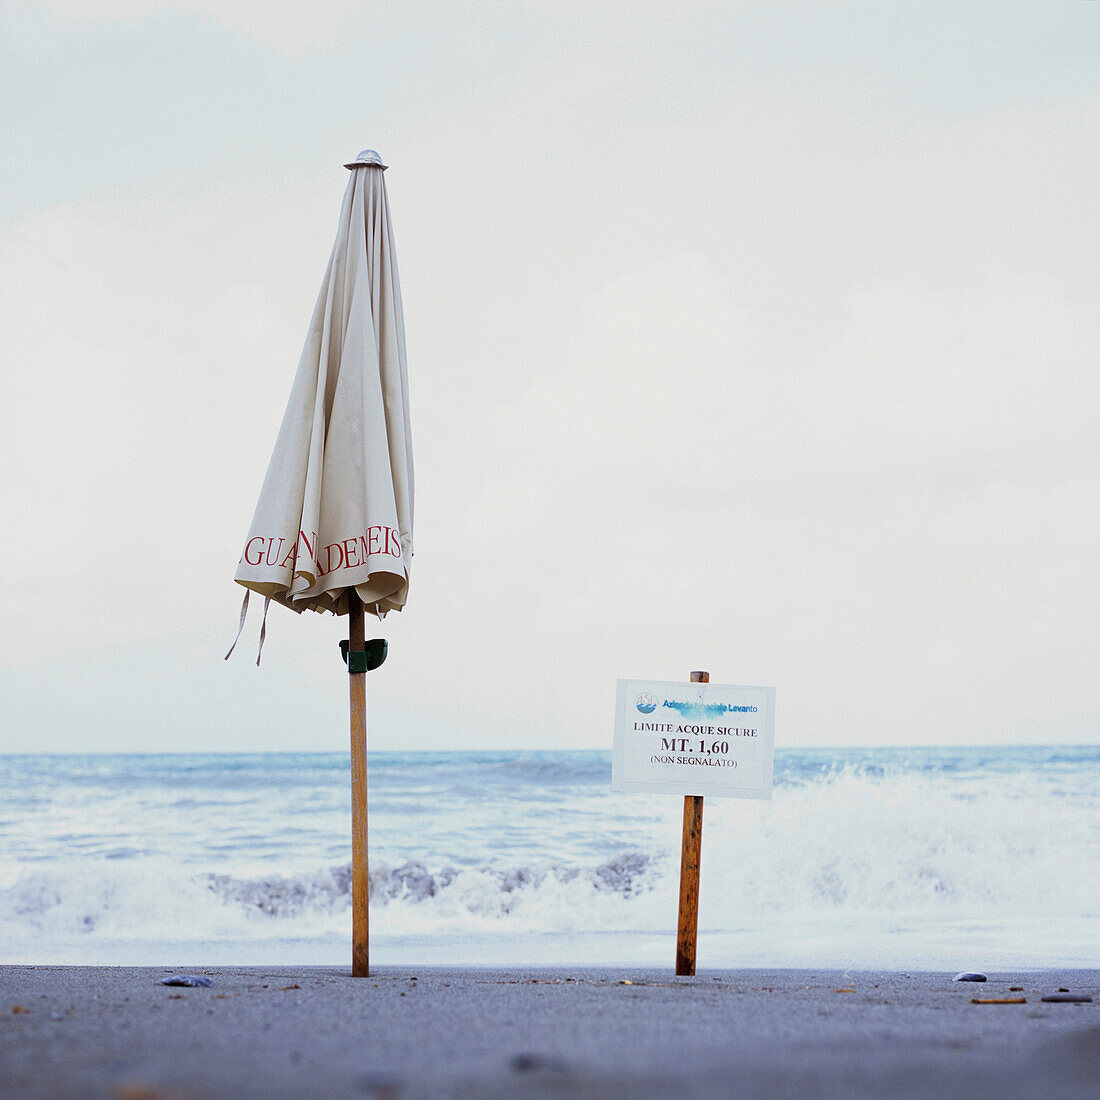 zusammengeklappter Sonnenschirm am Strand, Levanto, Ligurien, Italien